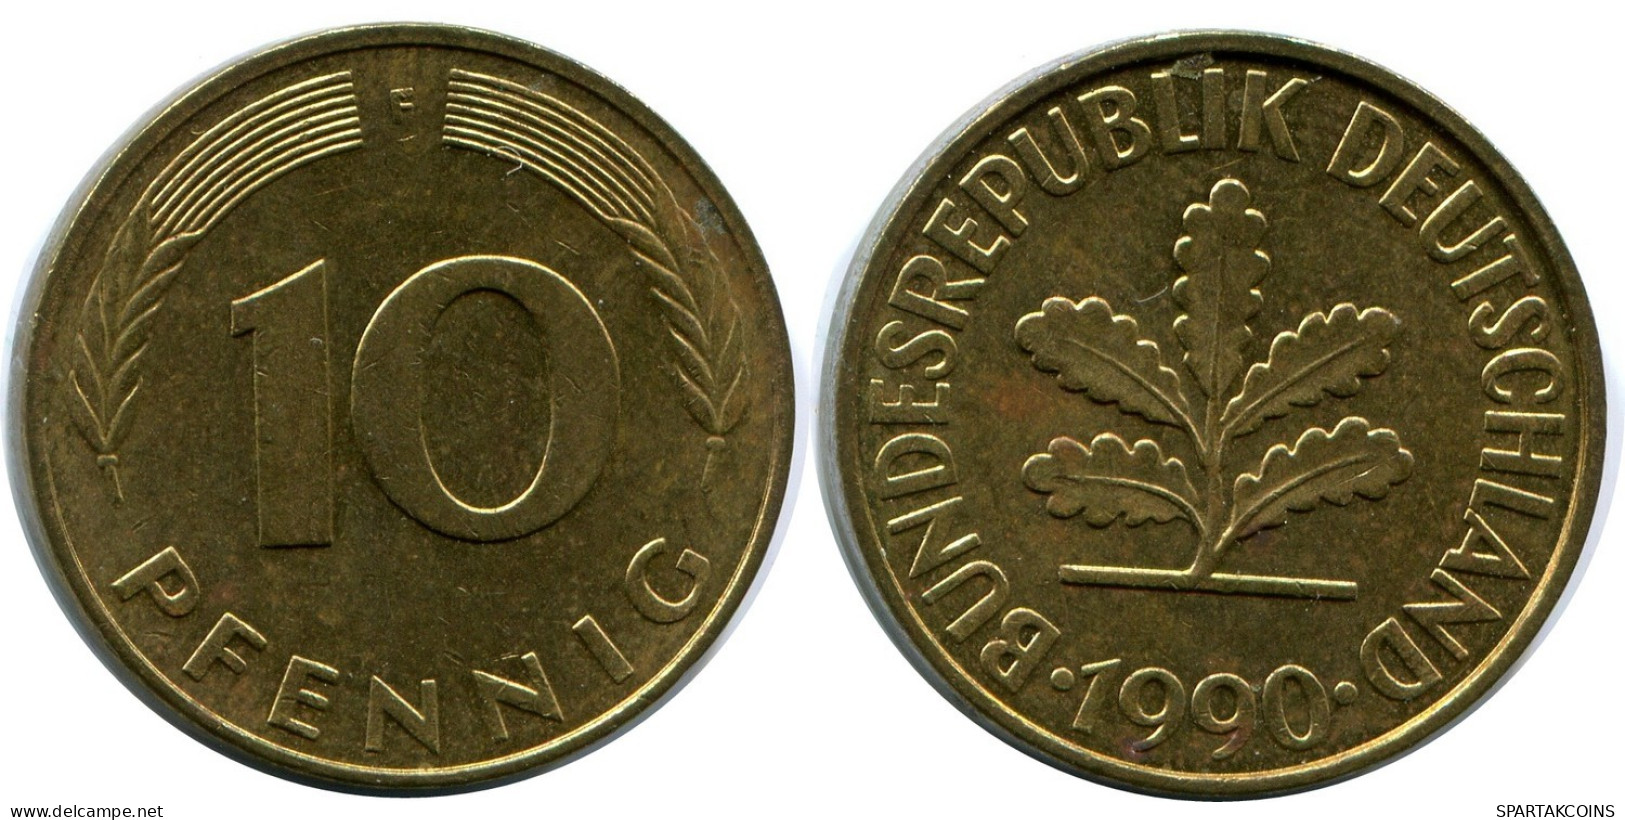 10 PFENNIG 1990 G WEST & UNIFIED GERMANY Coin #AZ453.U.A - 10 Pfennig